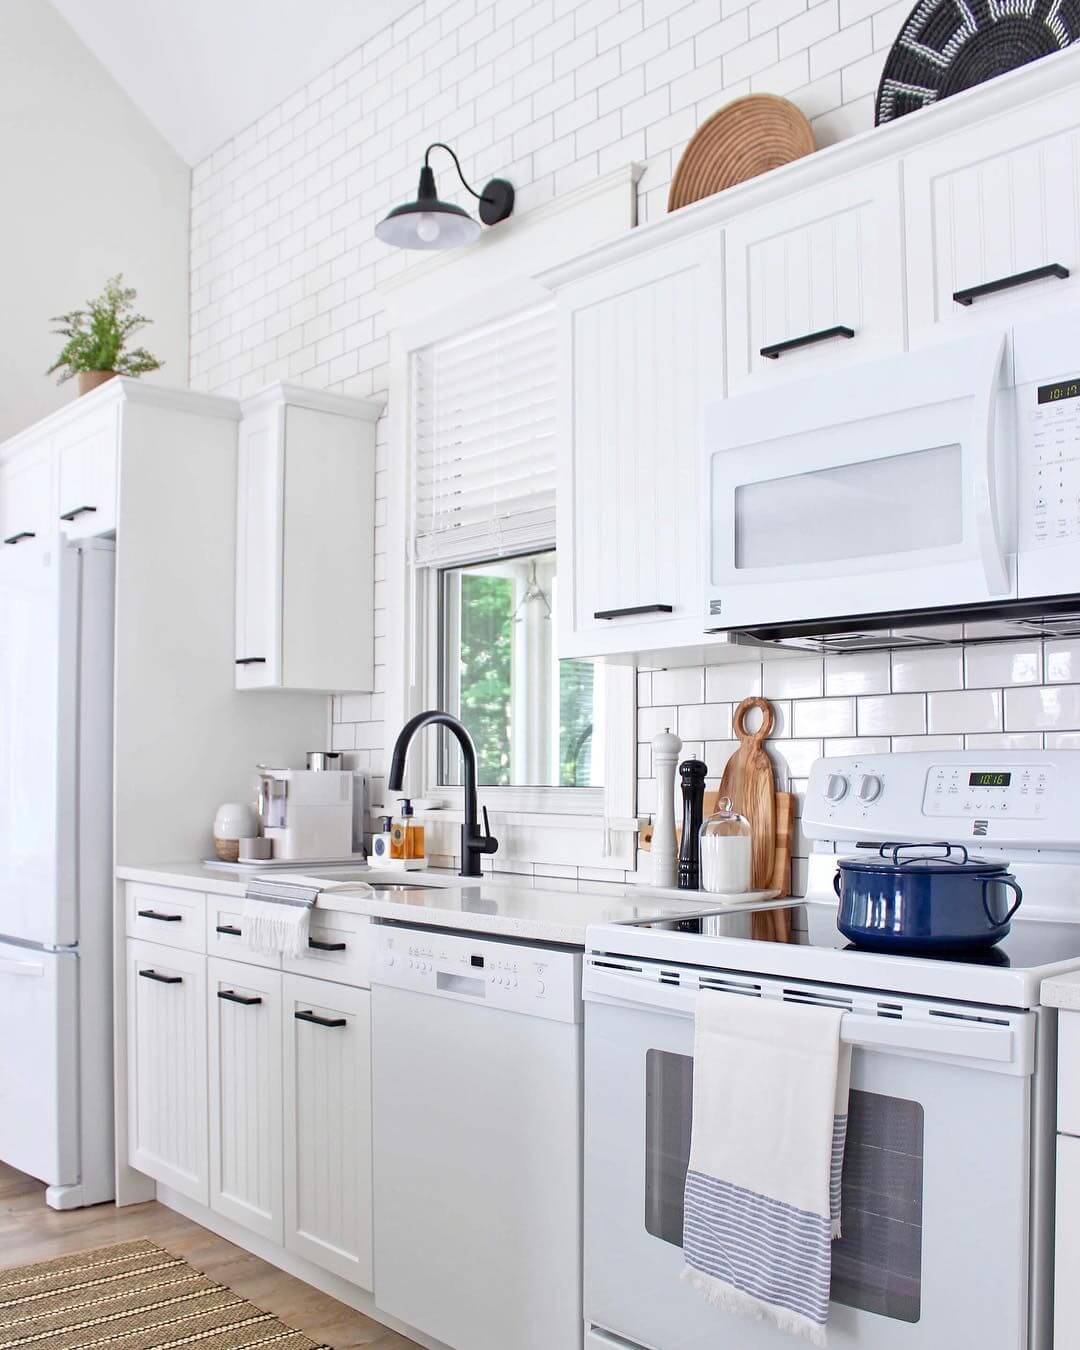 черный смеситель и ручке кухонных шкафов на белой кухне